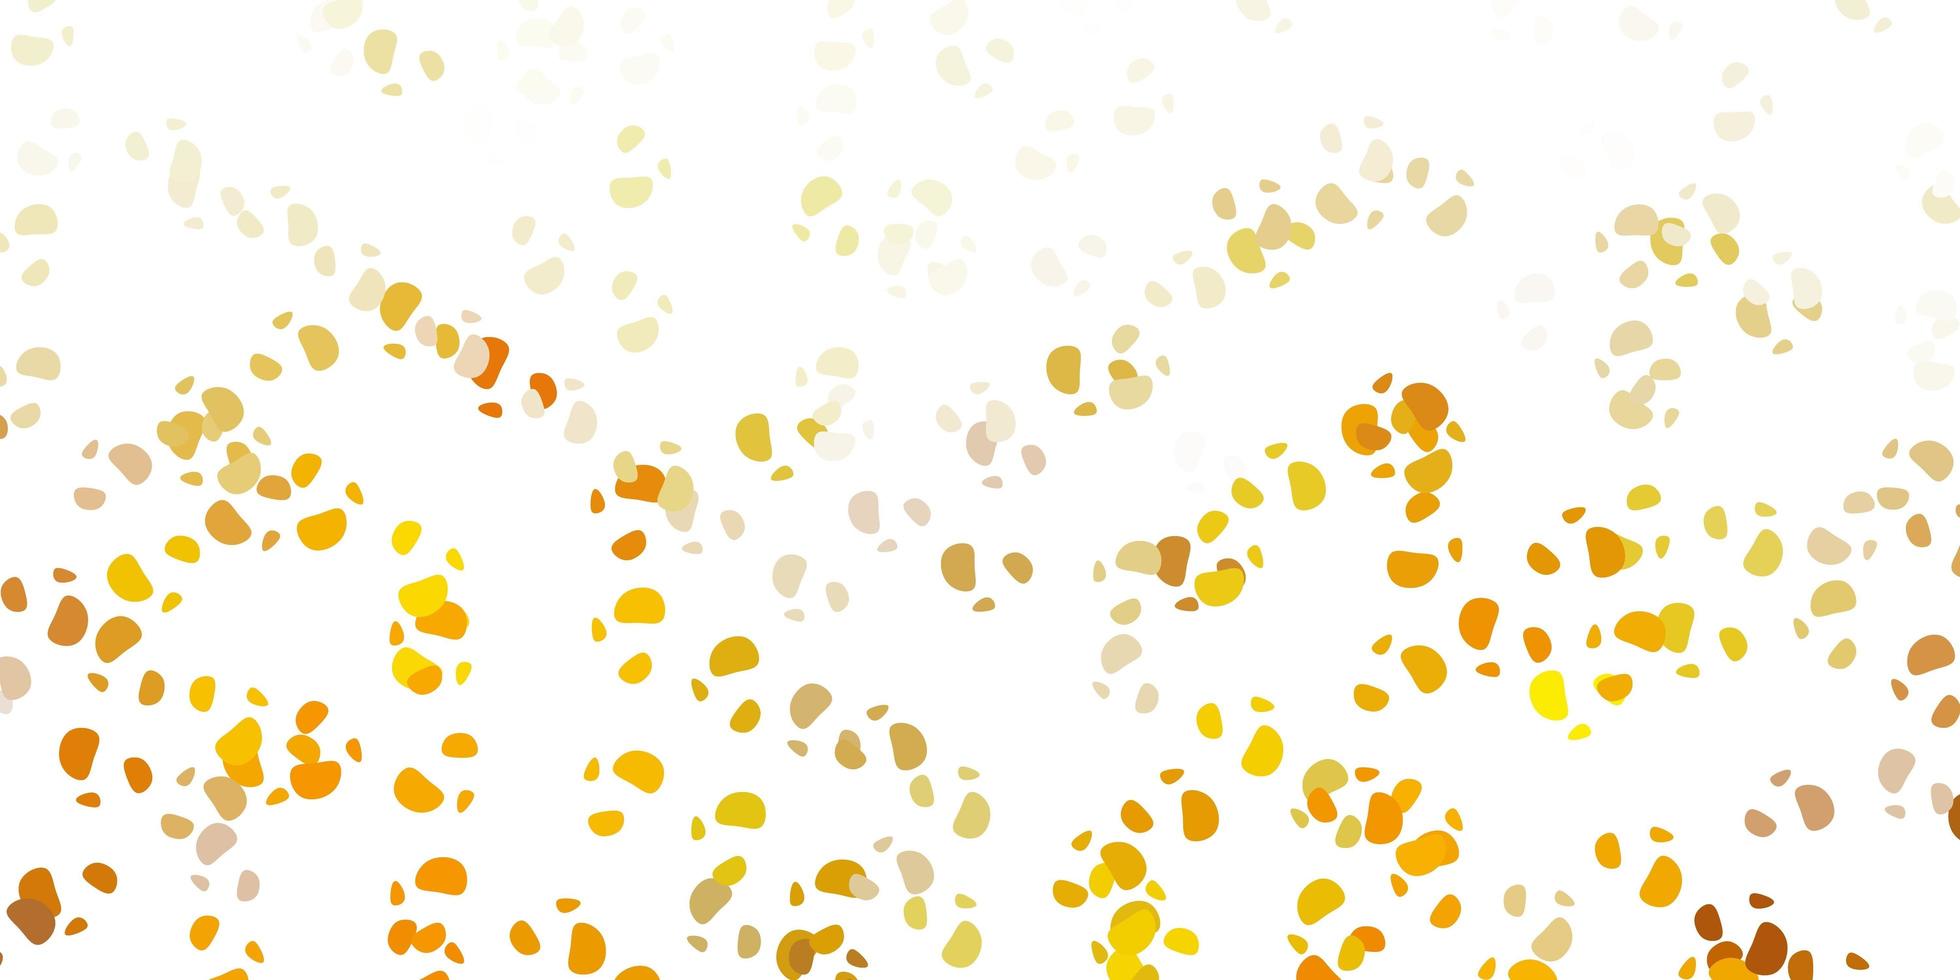 motif vectoriel jaune vert clair avec des formes abstraites